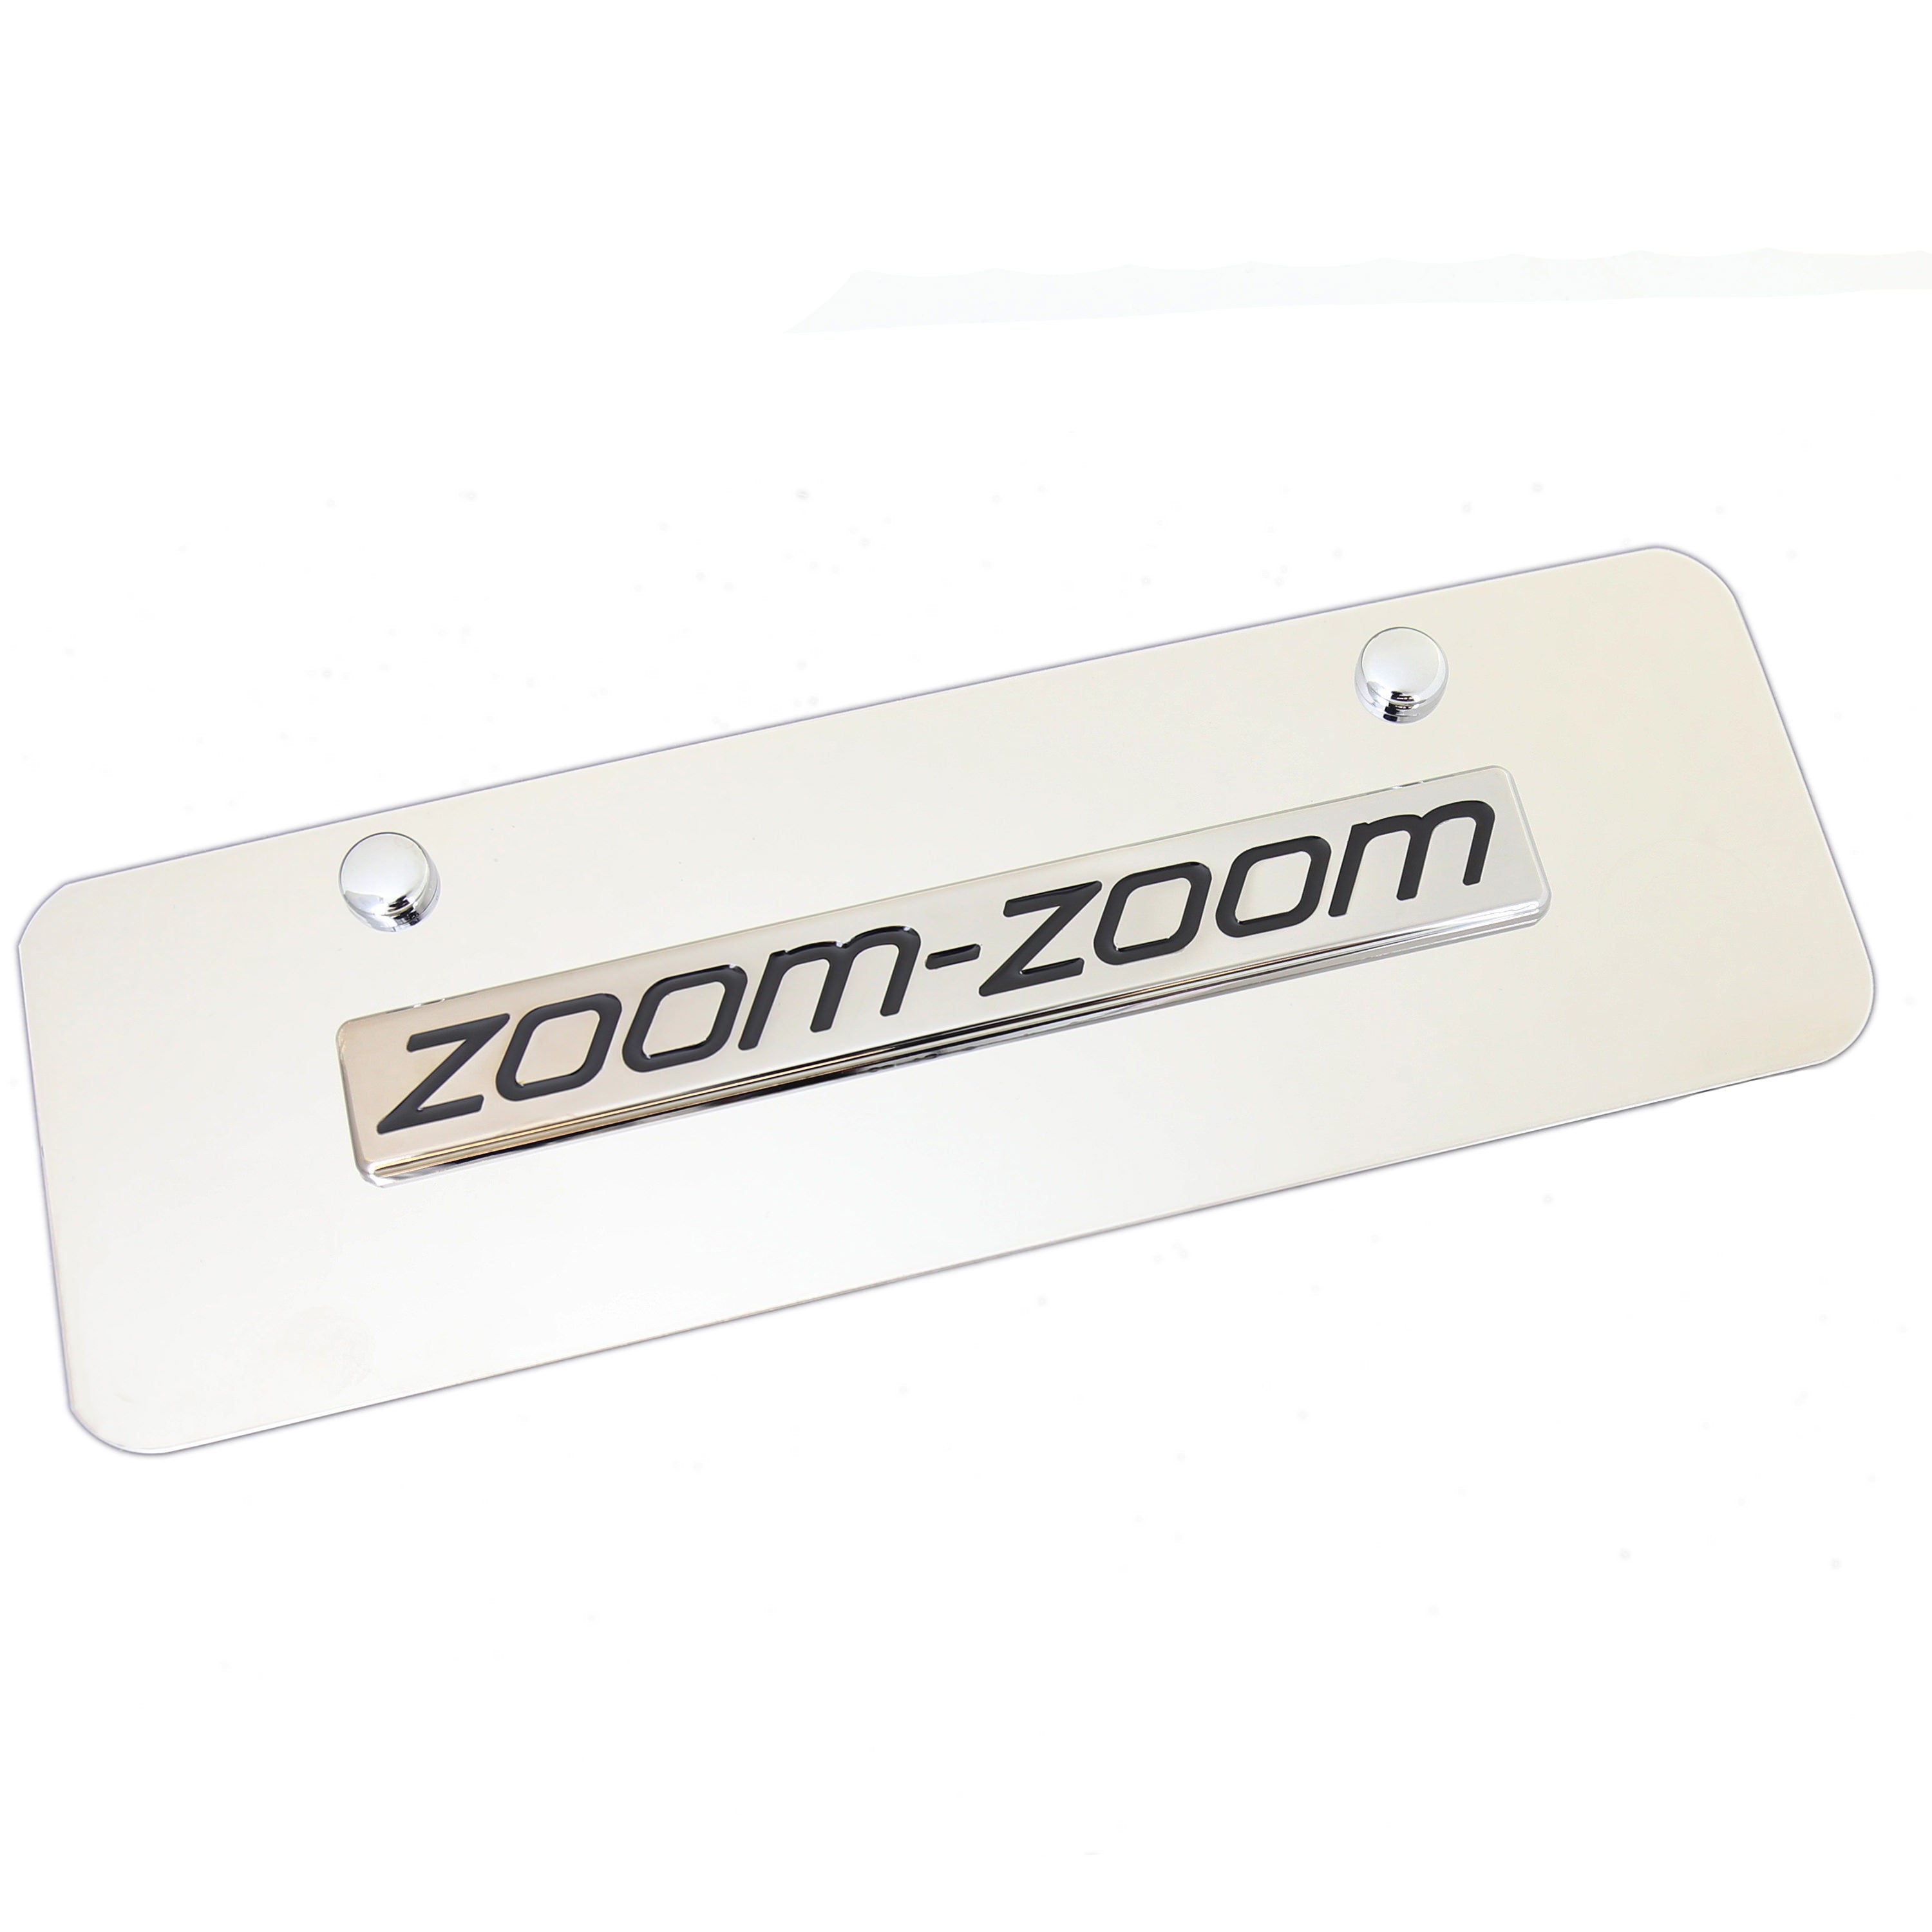 Mazda Zoom Zoom Mini License Plate (Chrome) - Custom Werks